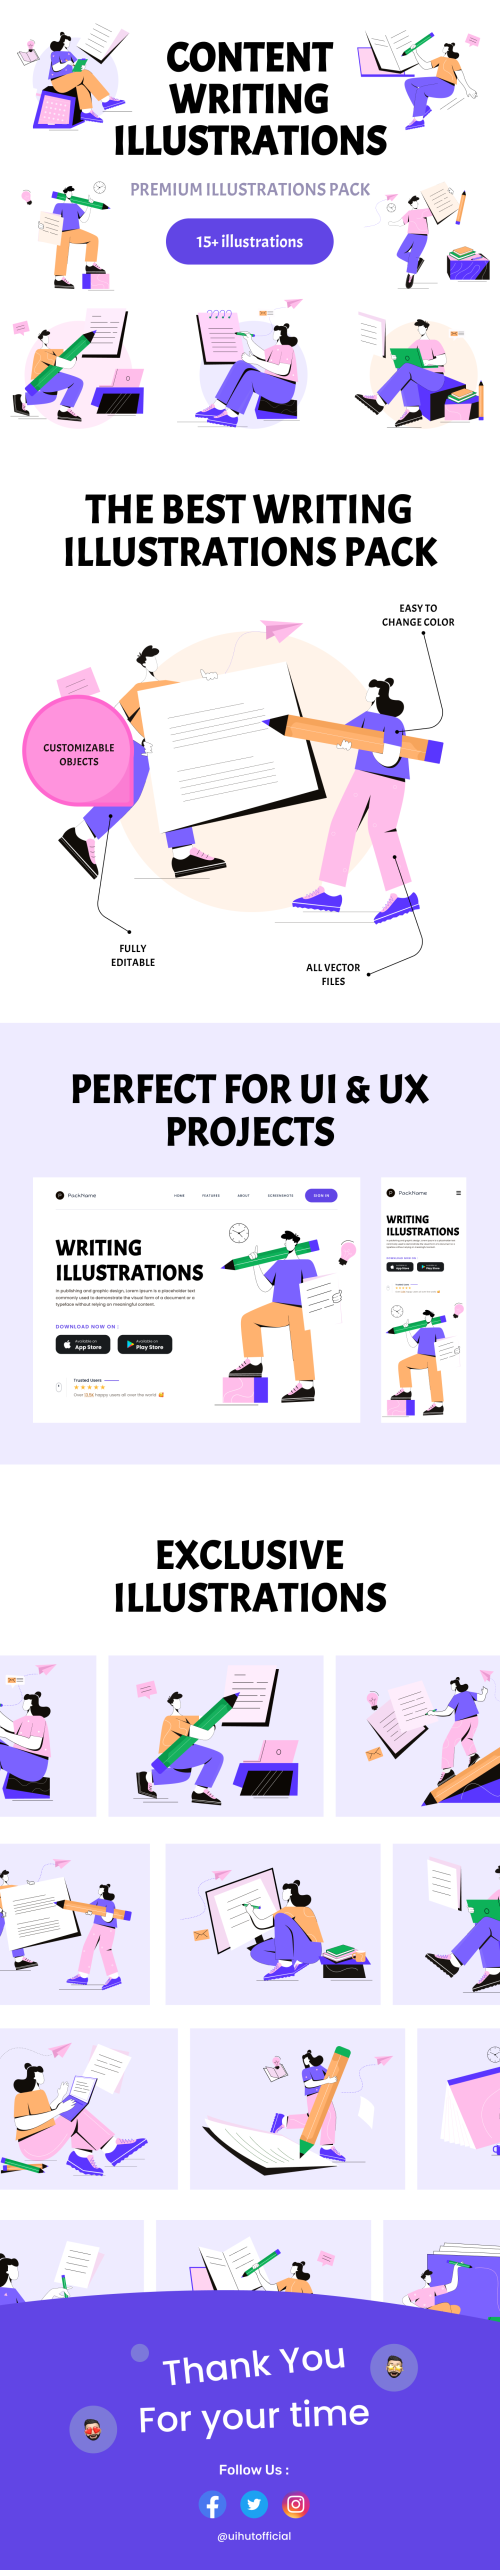 UIHut - Premium Content Writing Illustration Pack - 24668